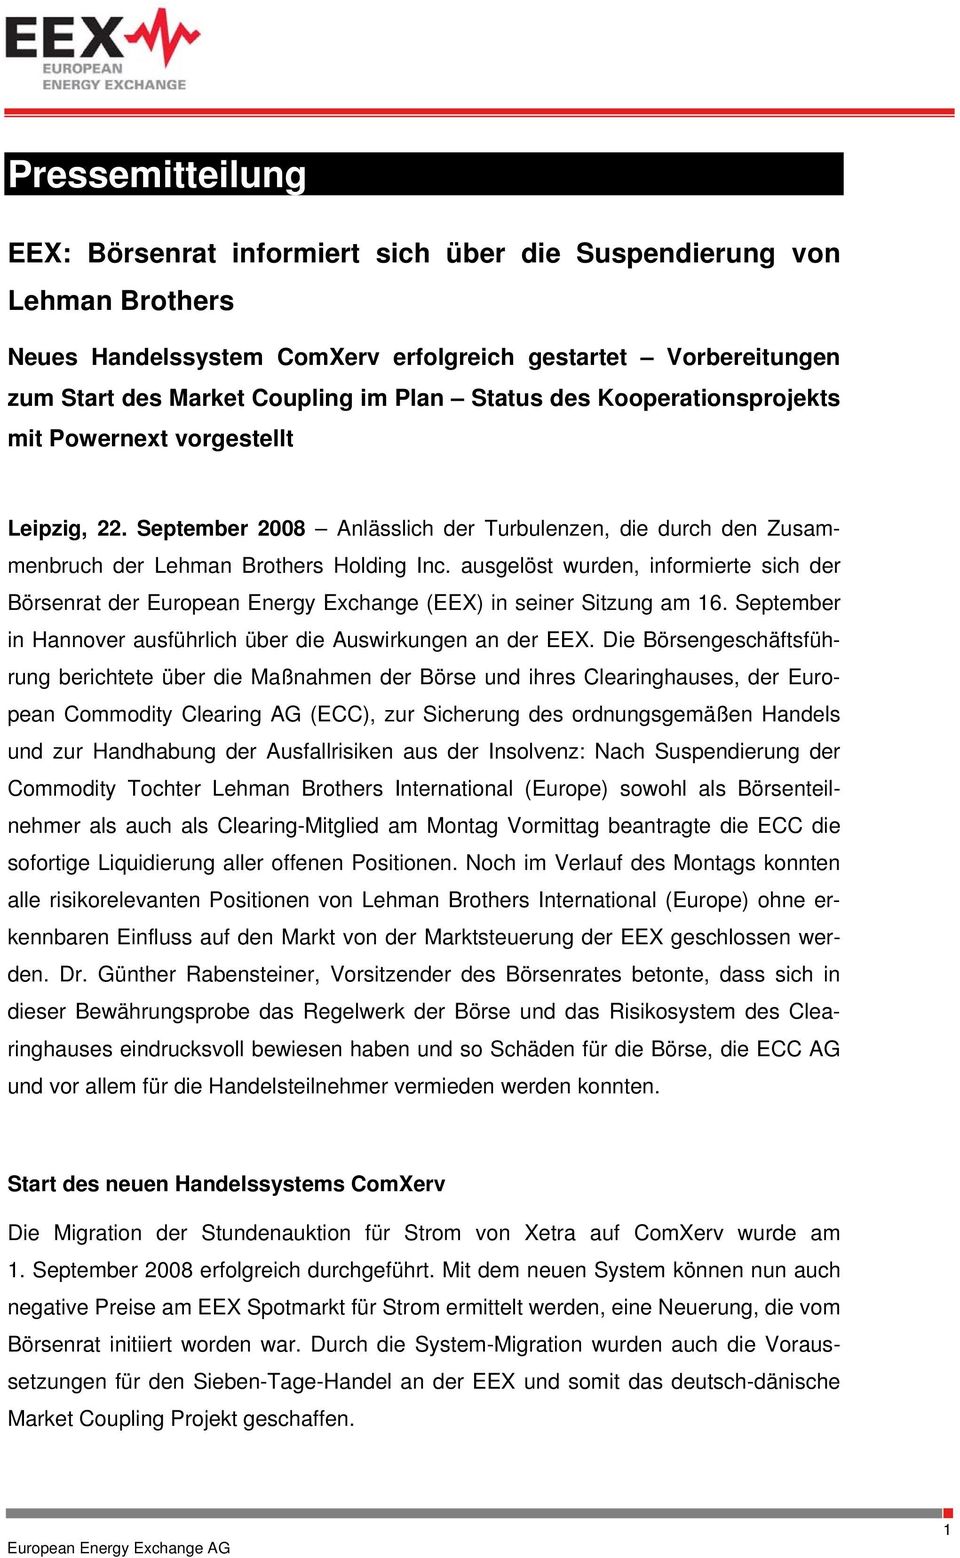 ausgelöst wurden, informierte sich der Börsenrat der European Energy Exchange (EEX) in seiner Sitzung am 16. September in Hannover ausführlich über die Auswirkungen an der EEX.